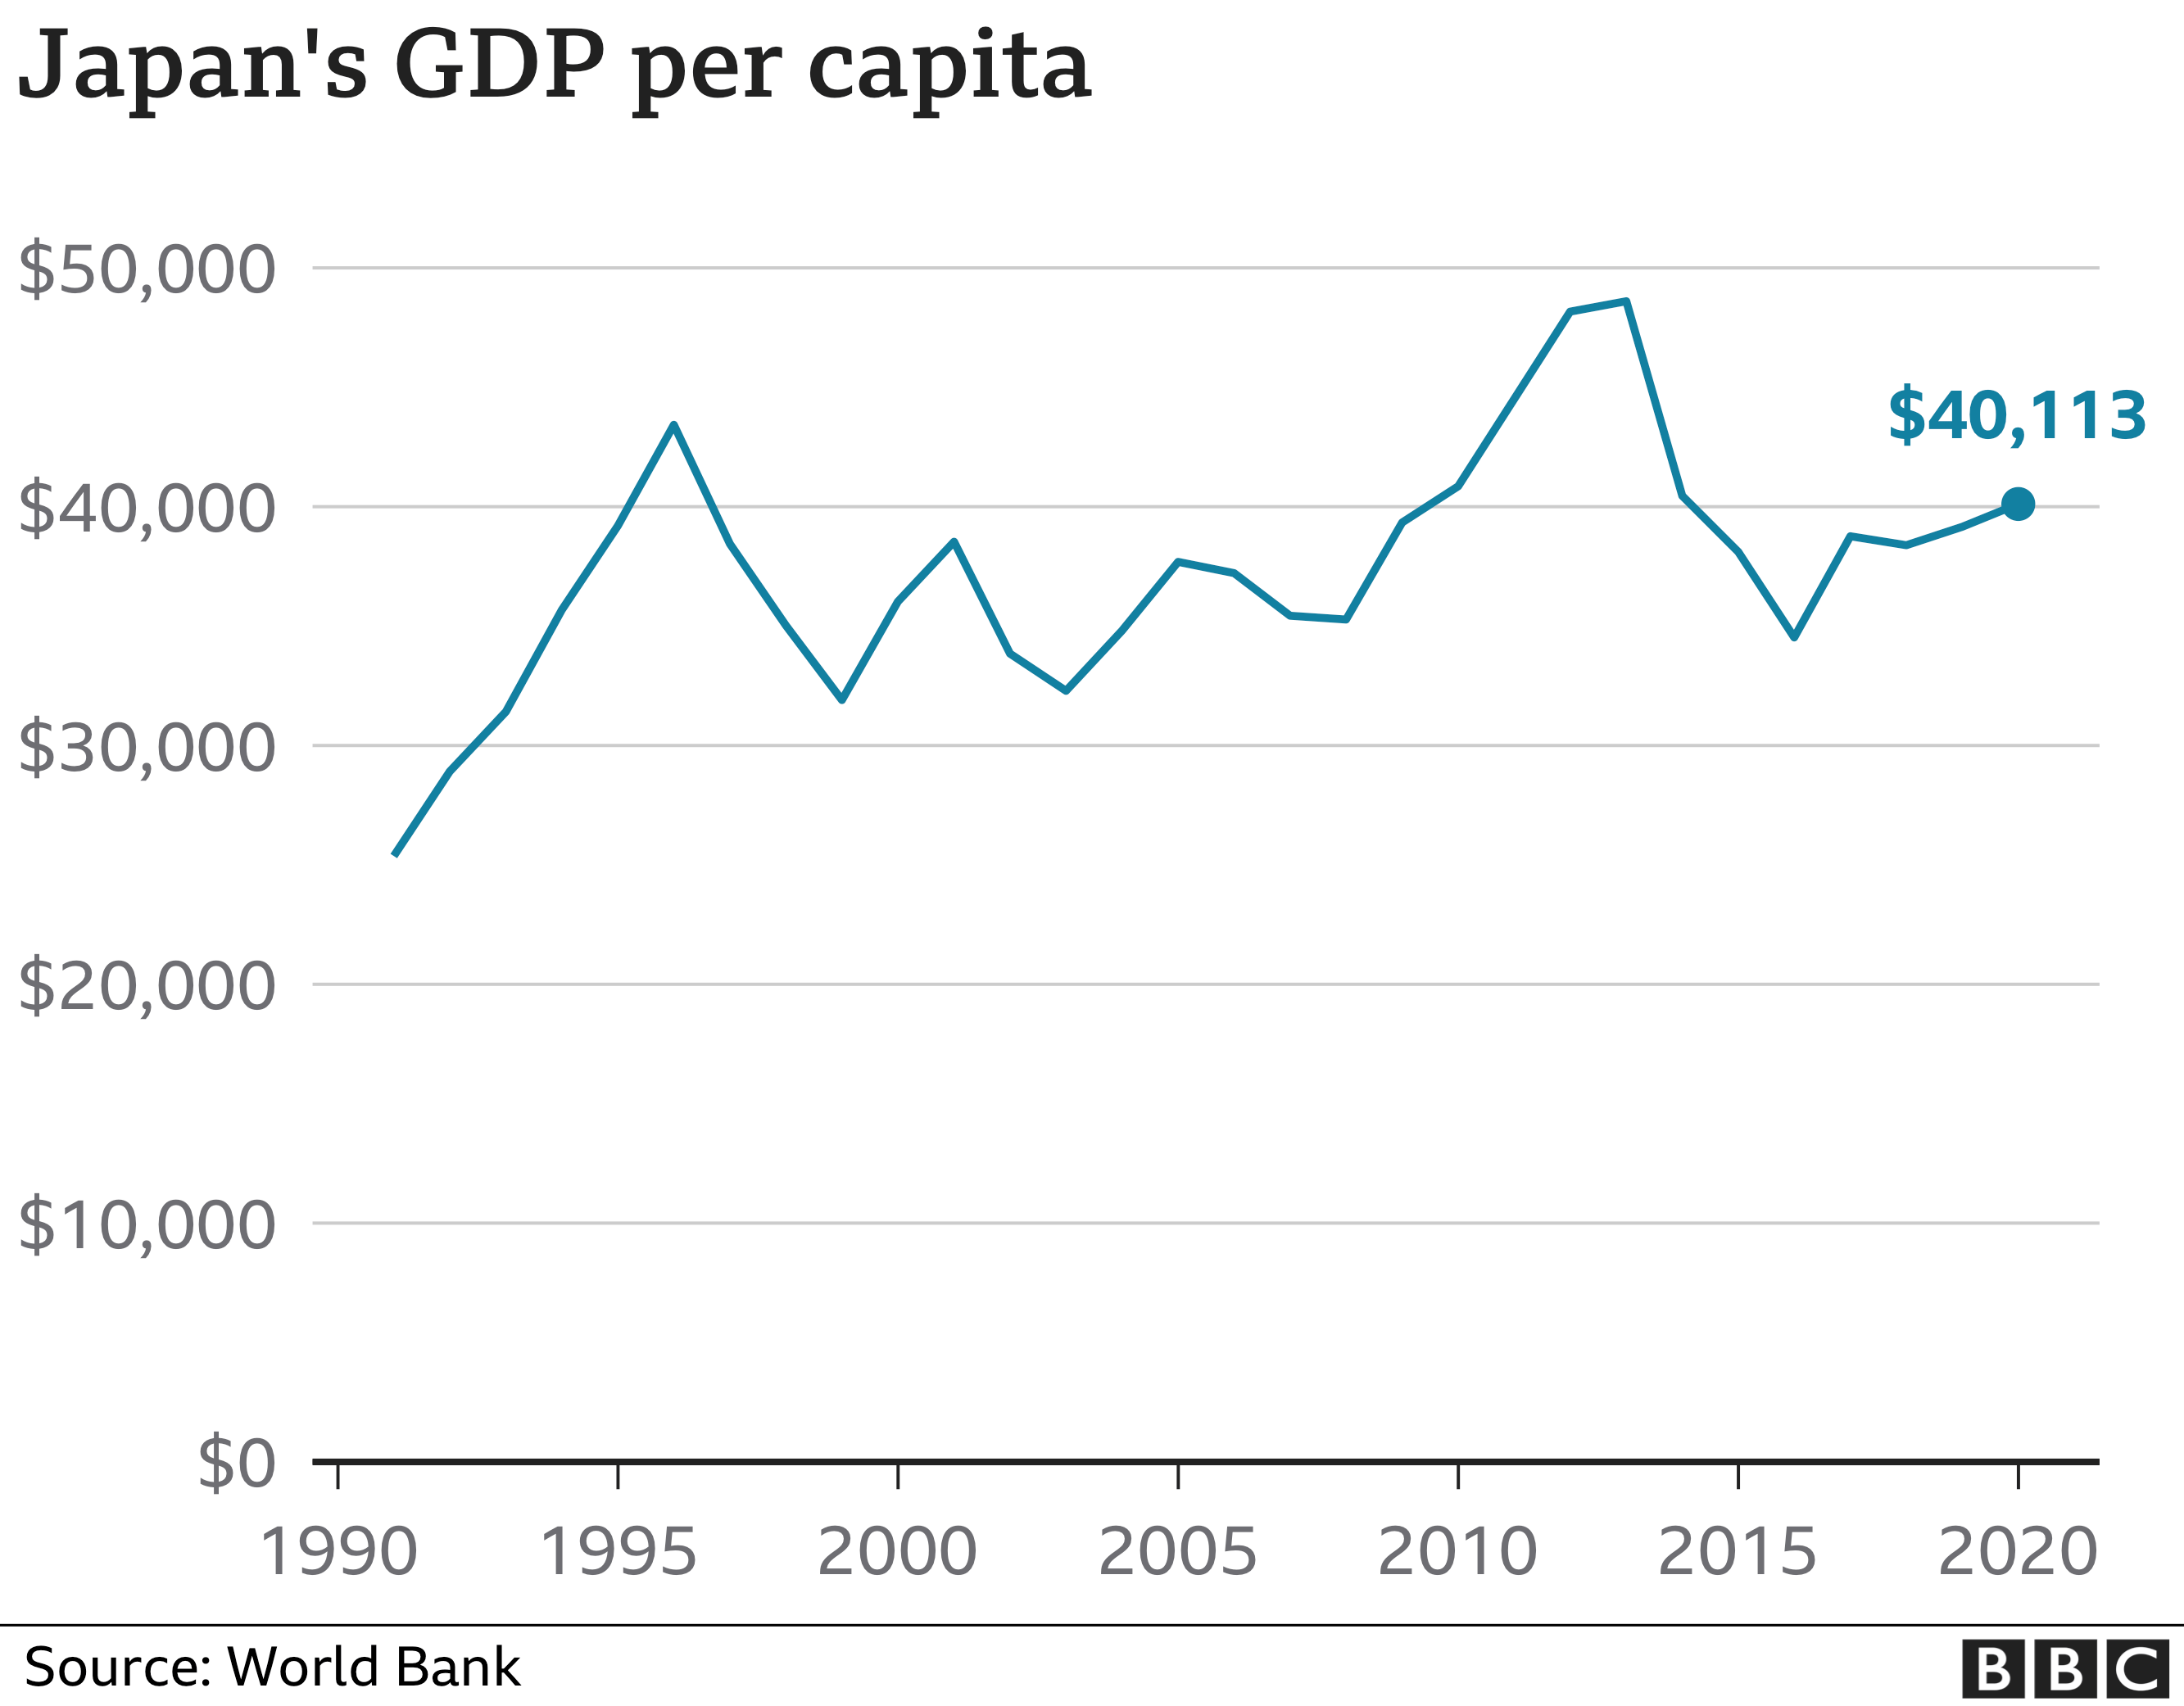 GDP per capita of Japan